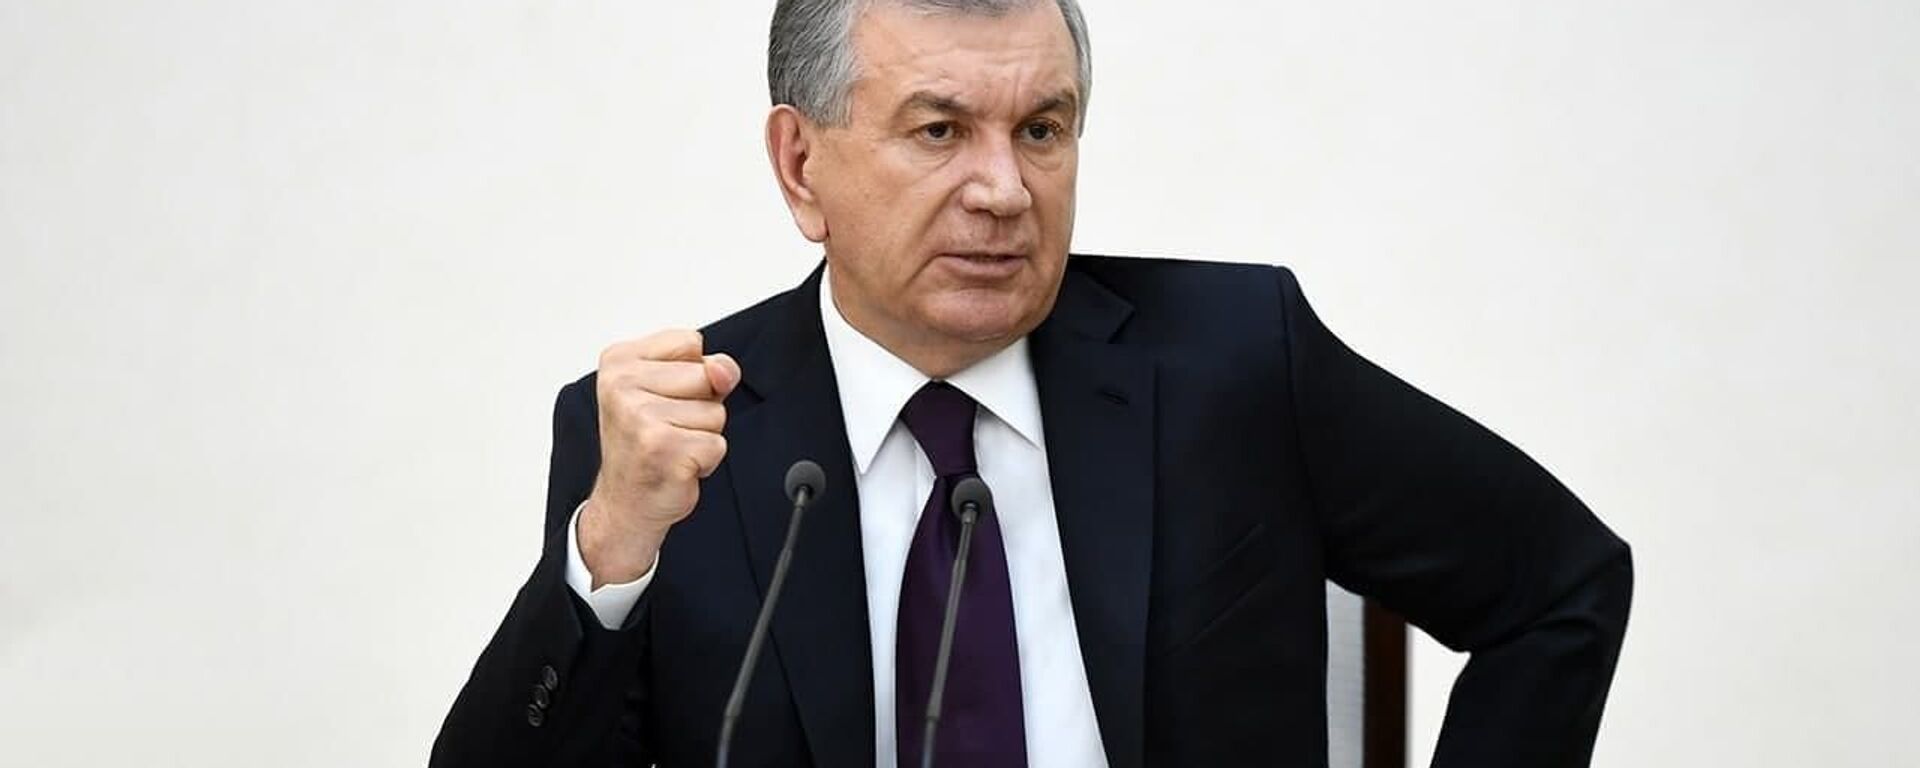 Шавкат Мирзиёев 12 февраля принял участие в расширенном заседании коллегии Министерства внутренних дел Республики Узбекистан - Sputnik Узбекистан, 1920, 12.02.2021